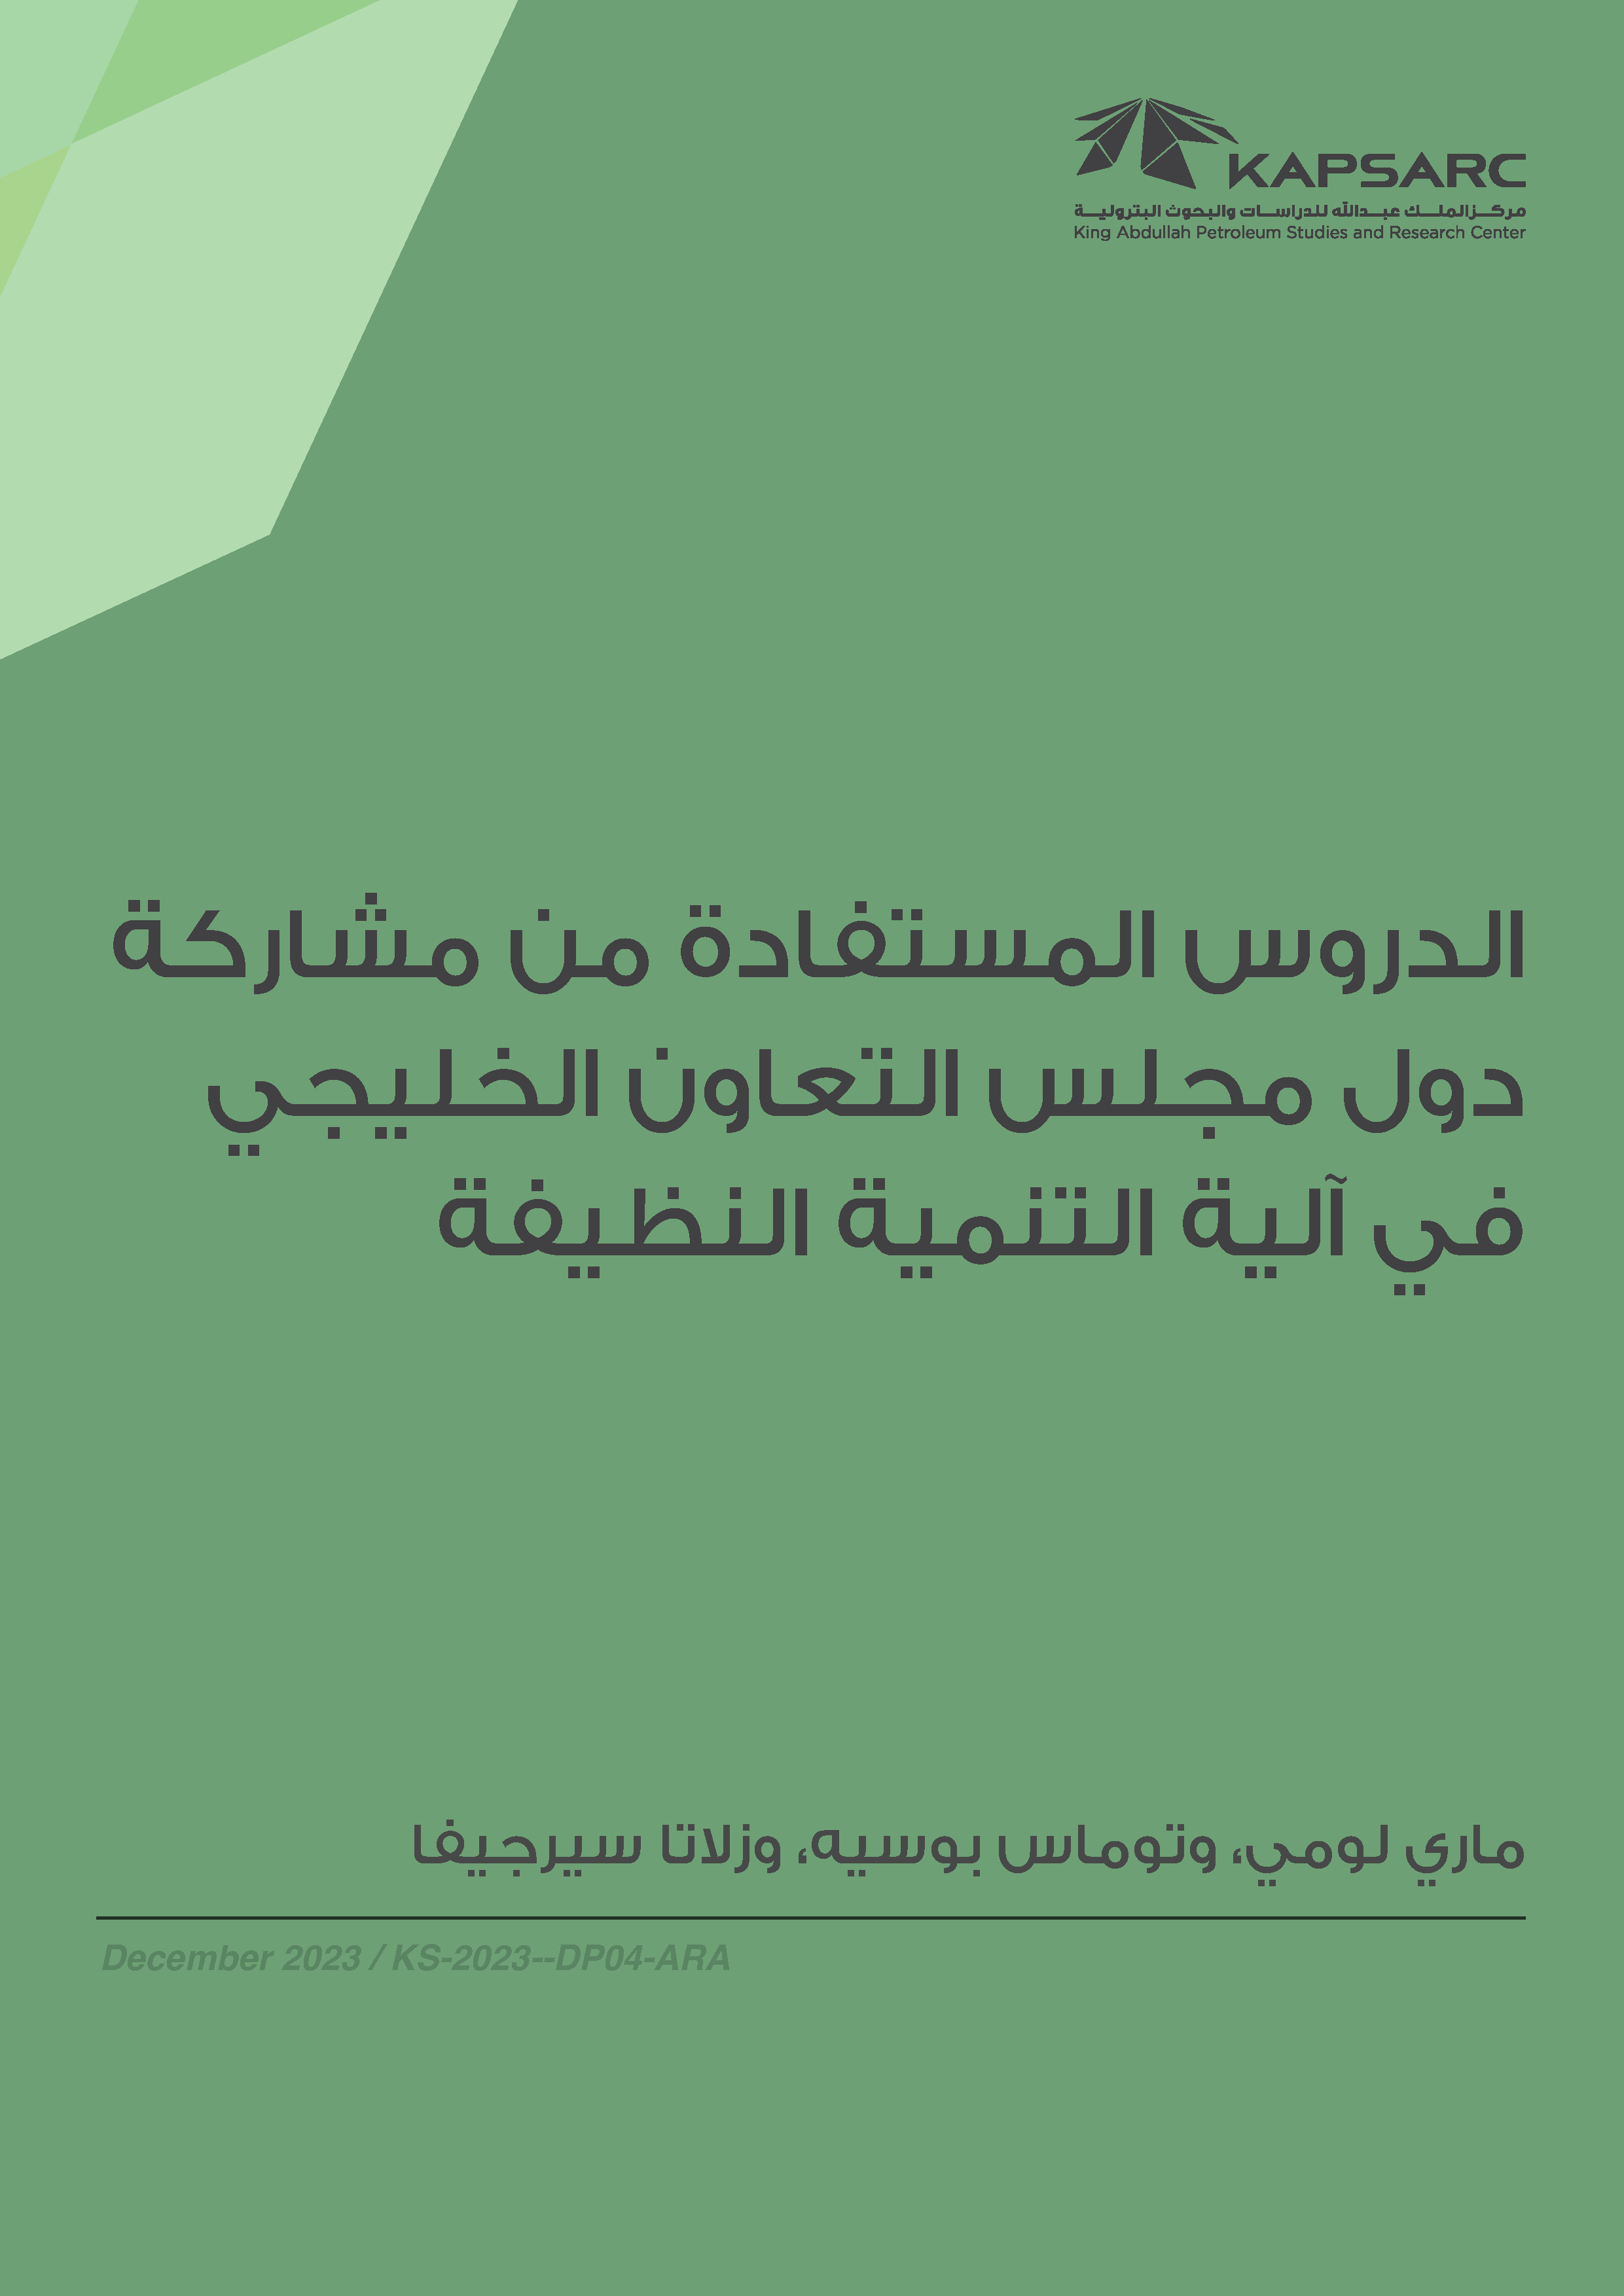 الدروس المستفادة من مشاركة دول مجلس التعاون الخليجي في آلية التنمية النظيفة